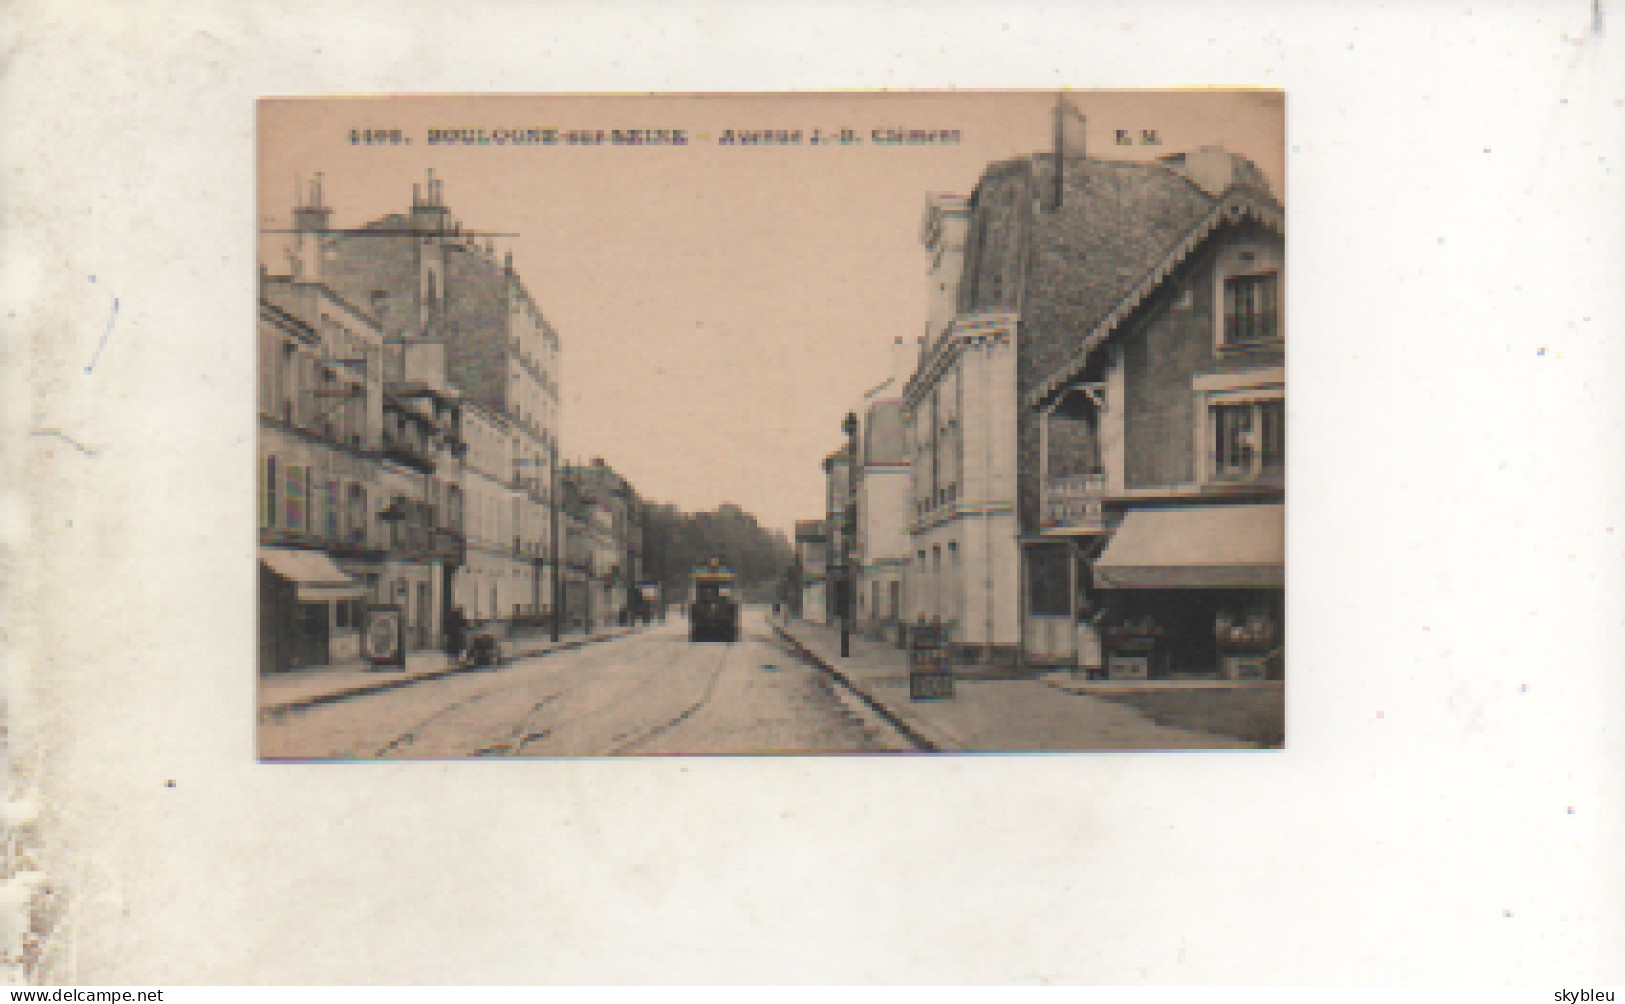 92. CPA - BOULOGNE SUR SEINE - Avenue J.B. Clément - Commerce La Souveraine - Tramway -  Scan Verso - - Boulogne Billancourt